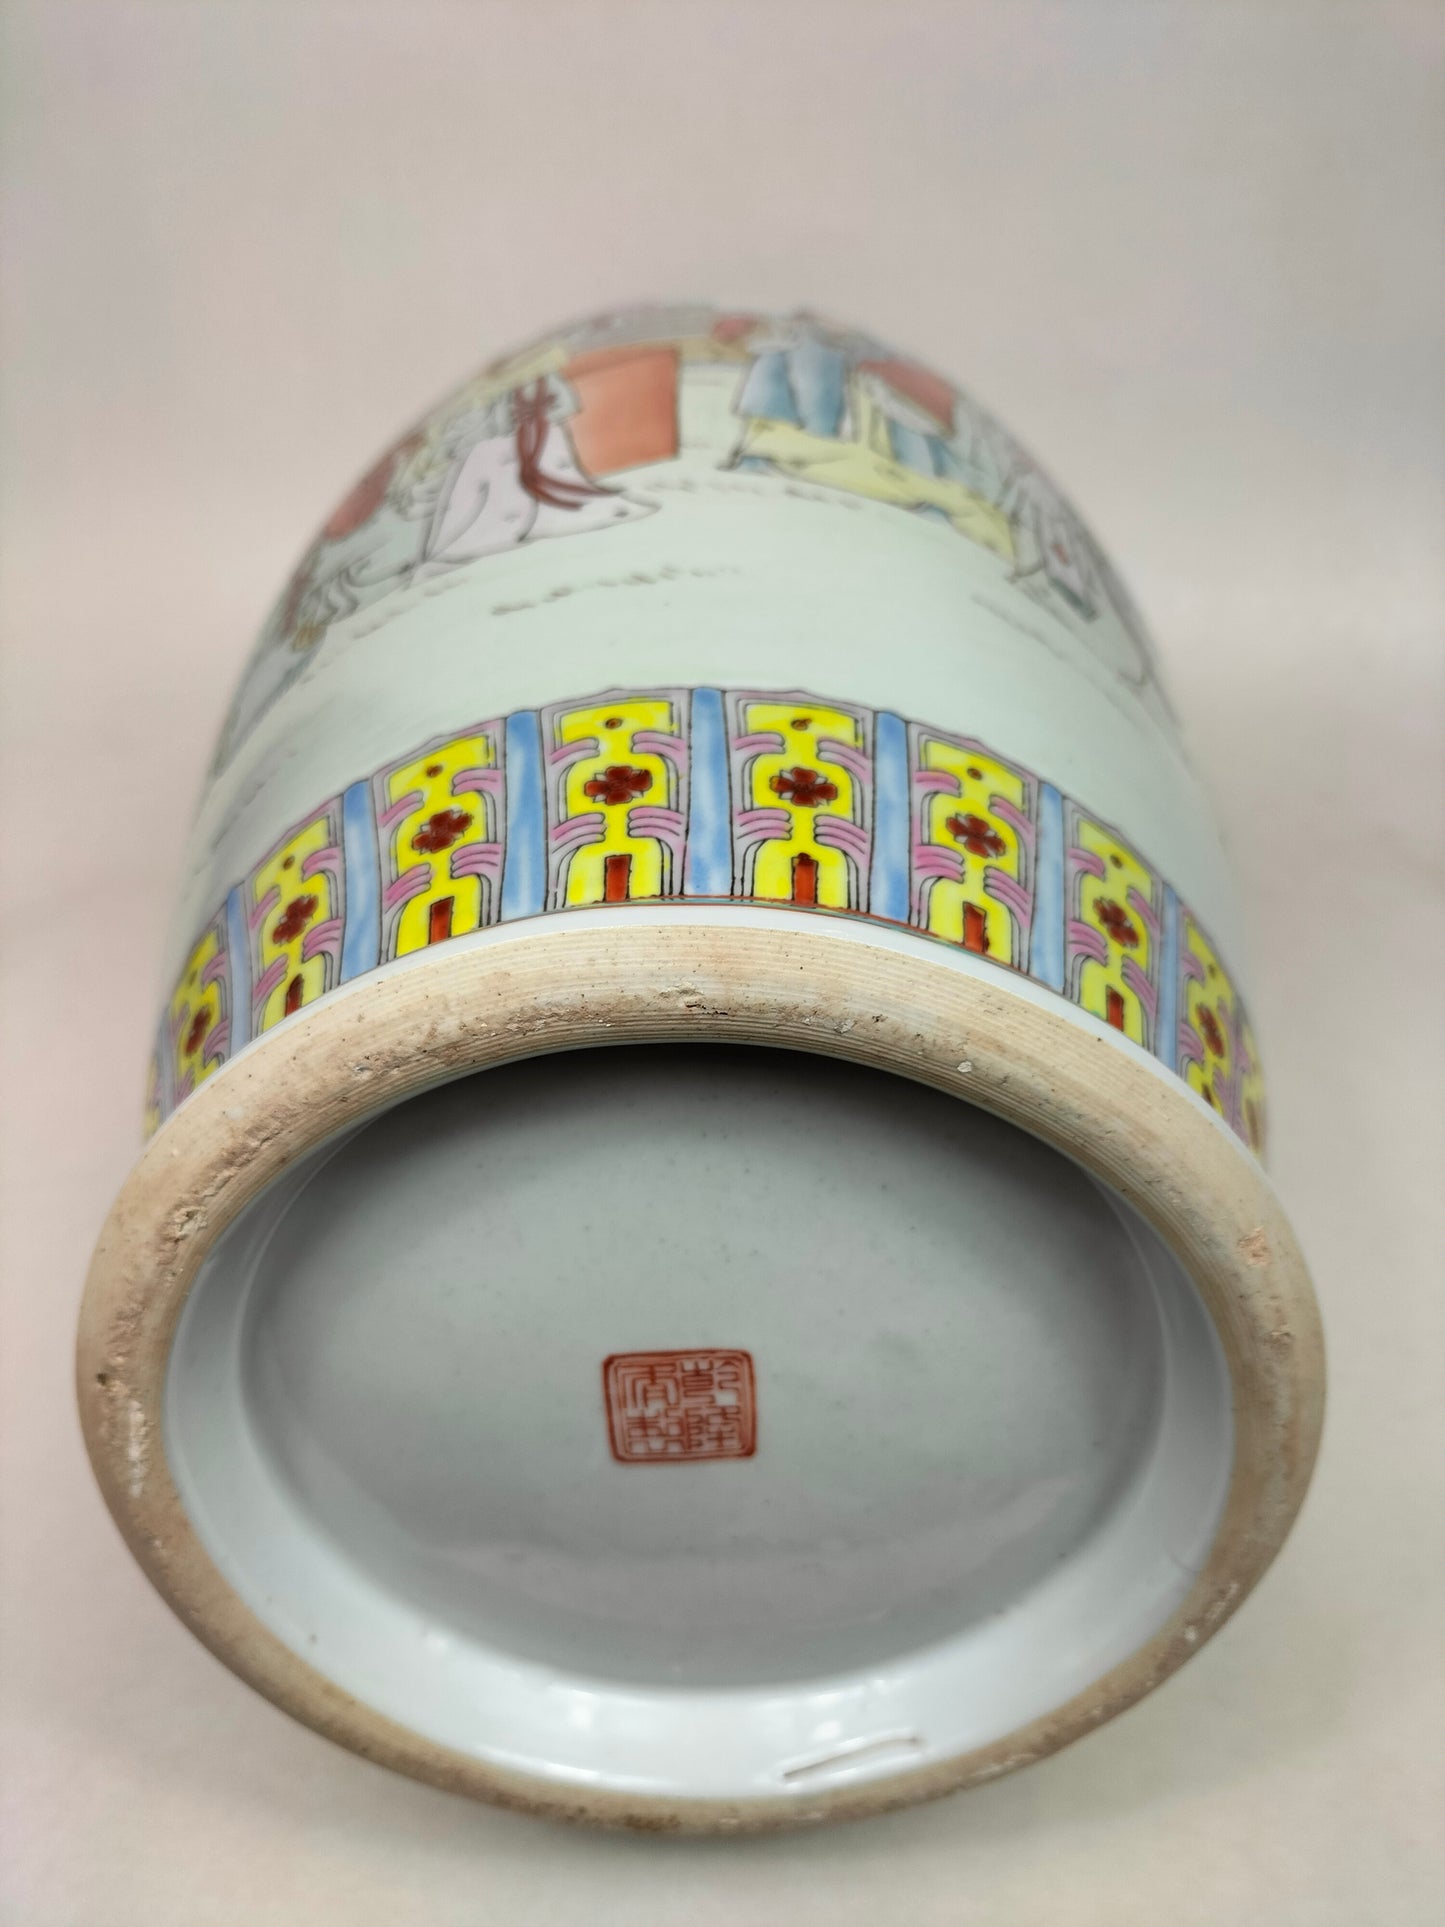 Grand vase chinois famille rose à personnages // Jingdezhen - 20ème siècle